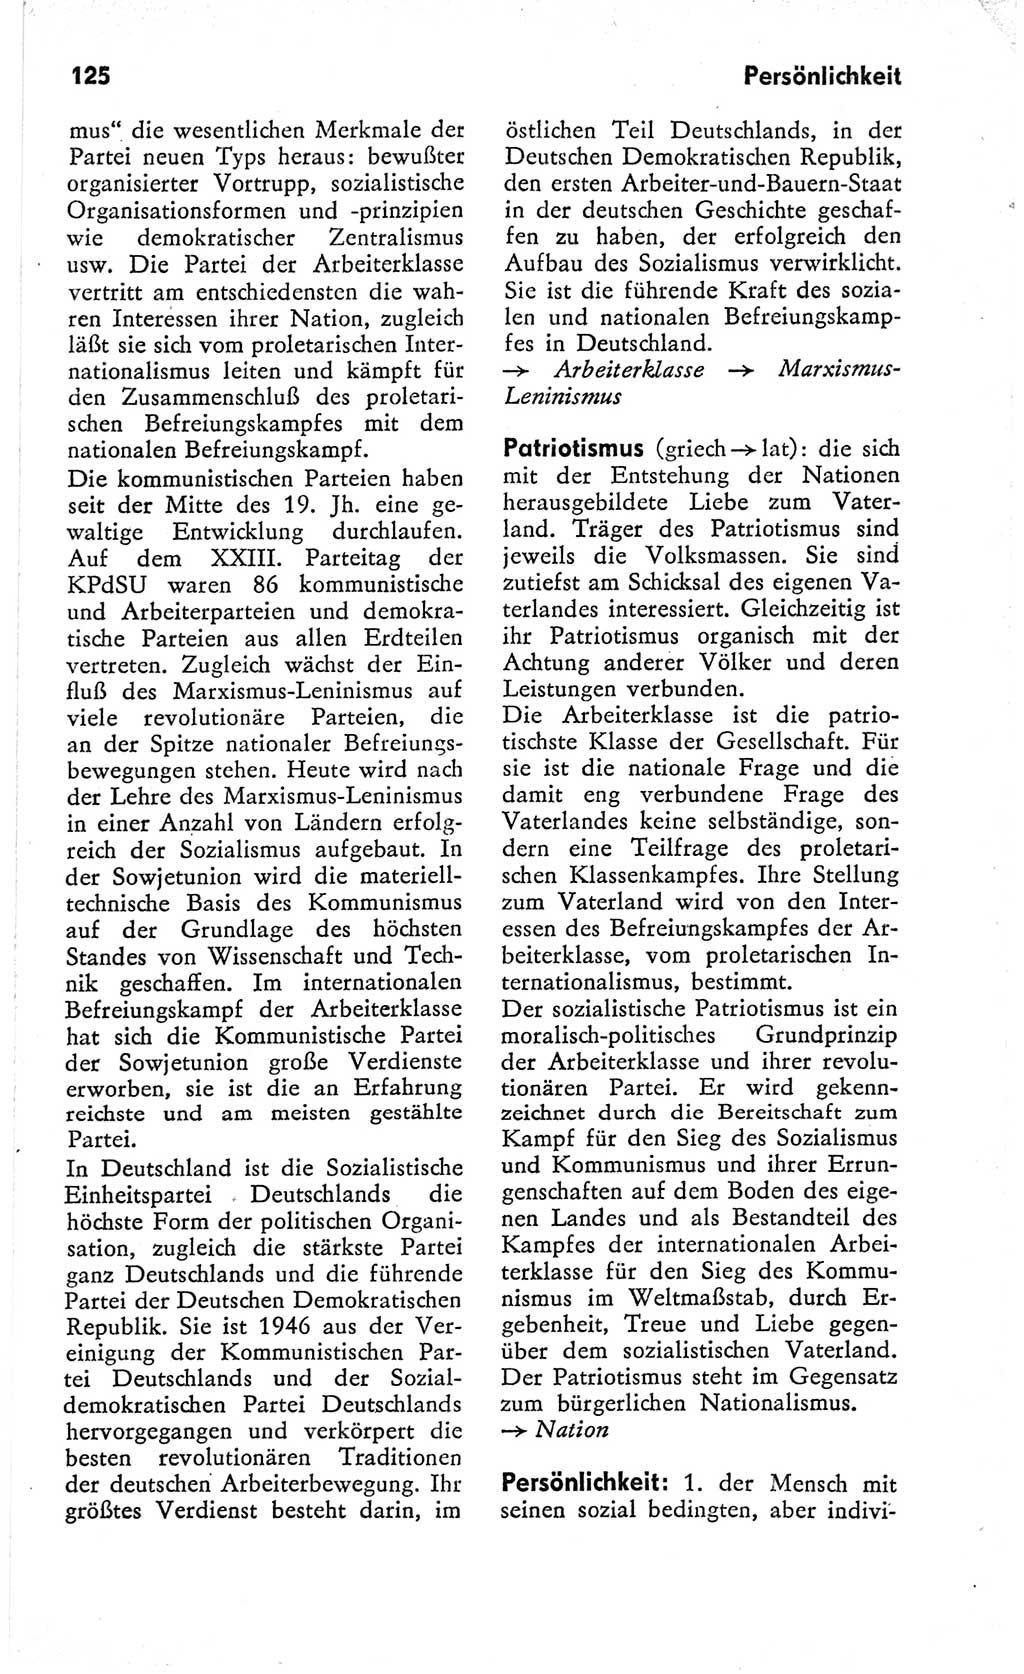 Kleines Wörterbuch der marxistisch-leninistischen Philosophie [Deutsche Demokratische Republik (DDR)] 1966, Seite 125 (Kl. Wb. ML Phil. DDR 1966, S. 125)